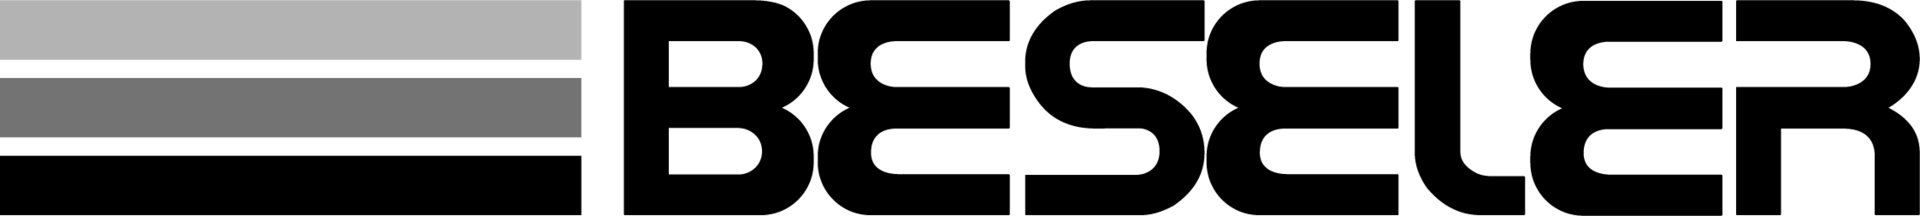 Beseler logo